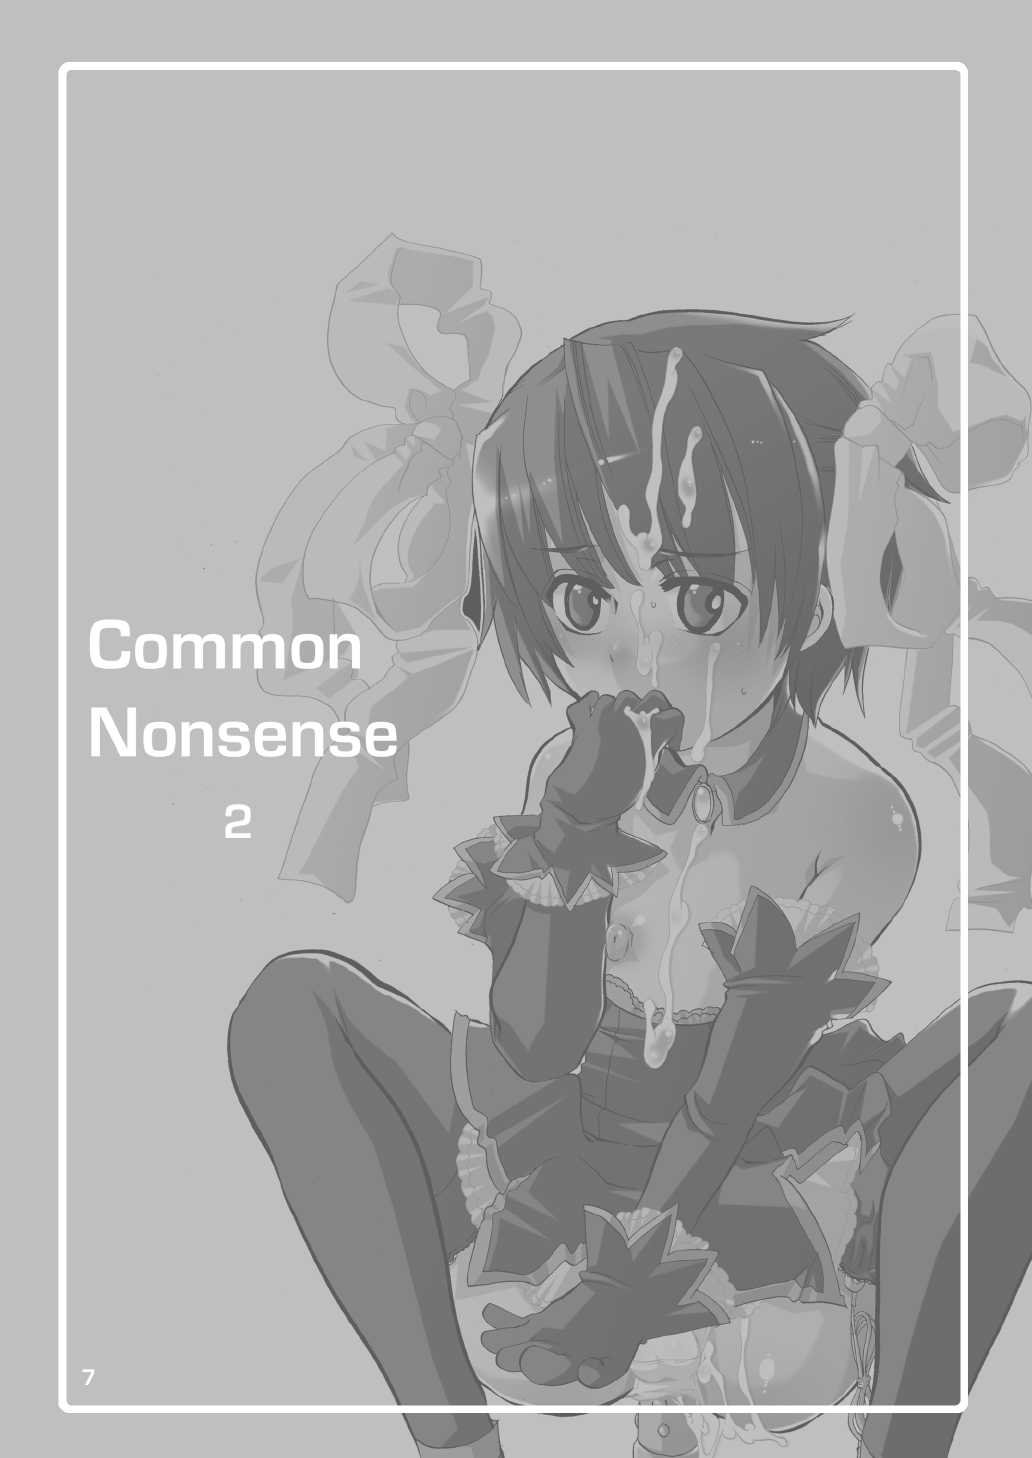 (Keikaku 8) [HONEY QP (Inochi Wazuka)] Common Nonsense vol. 2 (Higurashi no Naku Koro ni, My-Otome) page 7 full